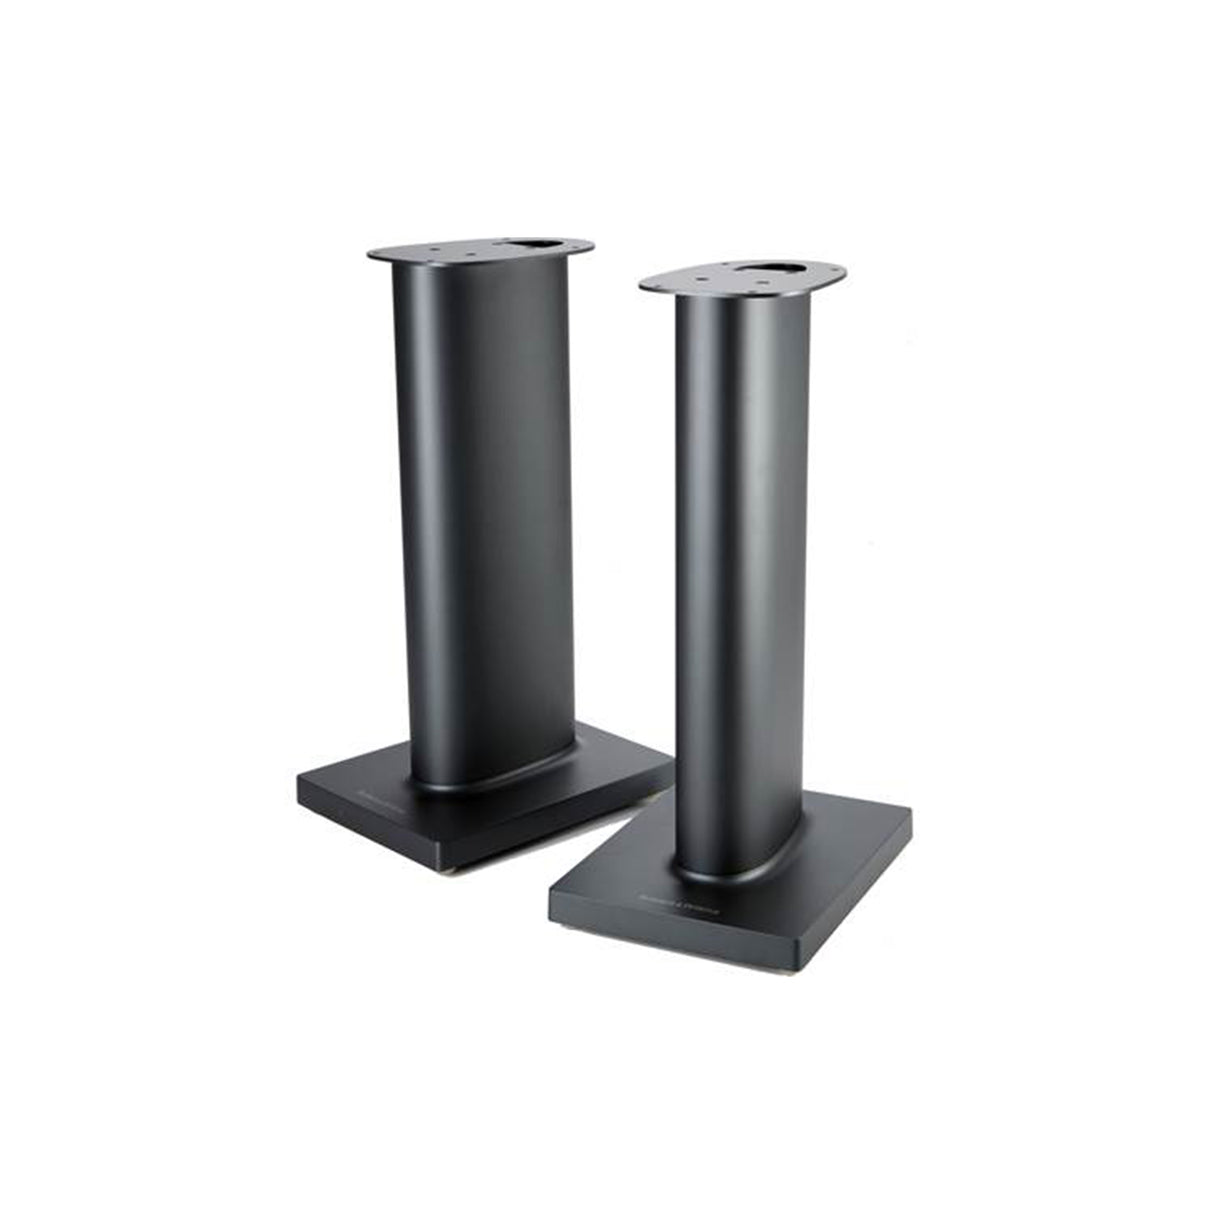 Bowers & Wilkins Formation Duo - FS Custom speaker stands for Formation Duo speakers (Pair)